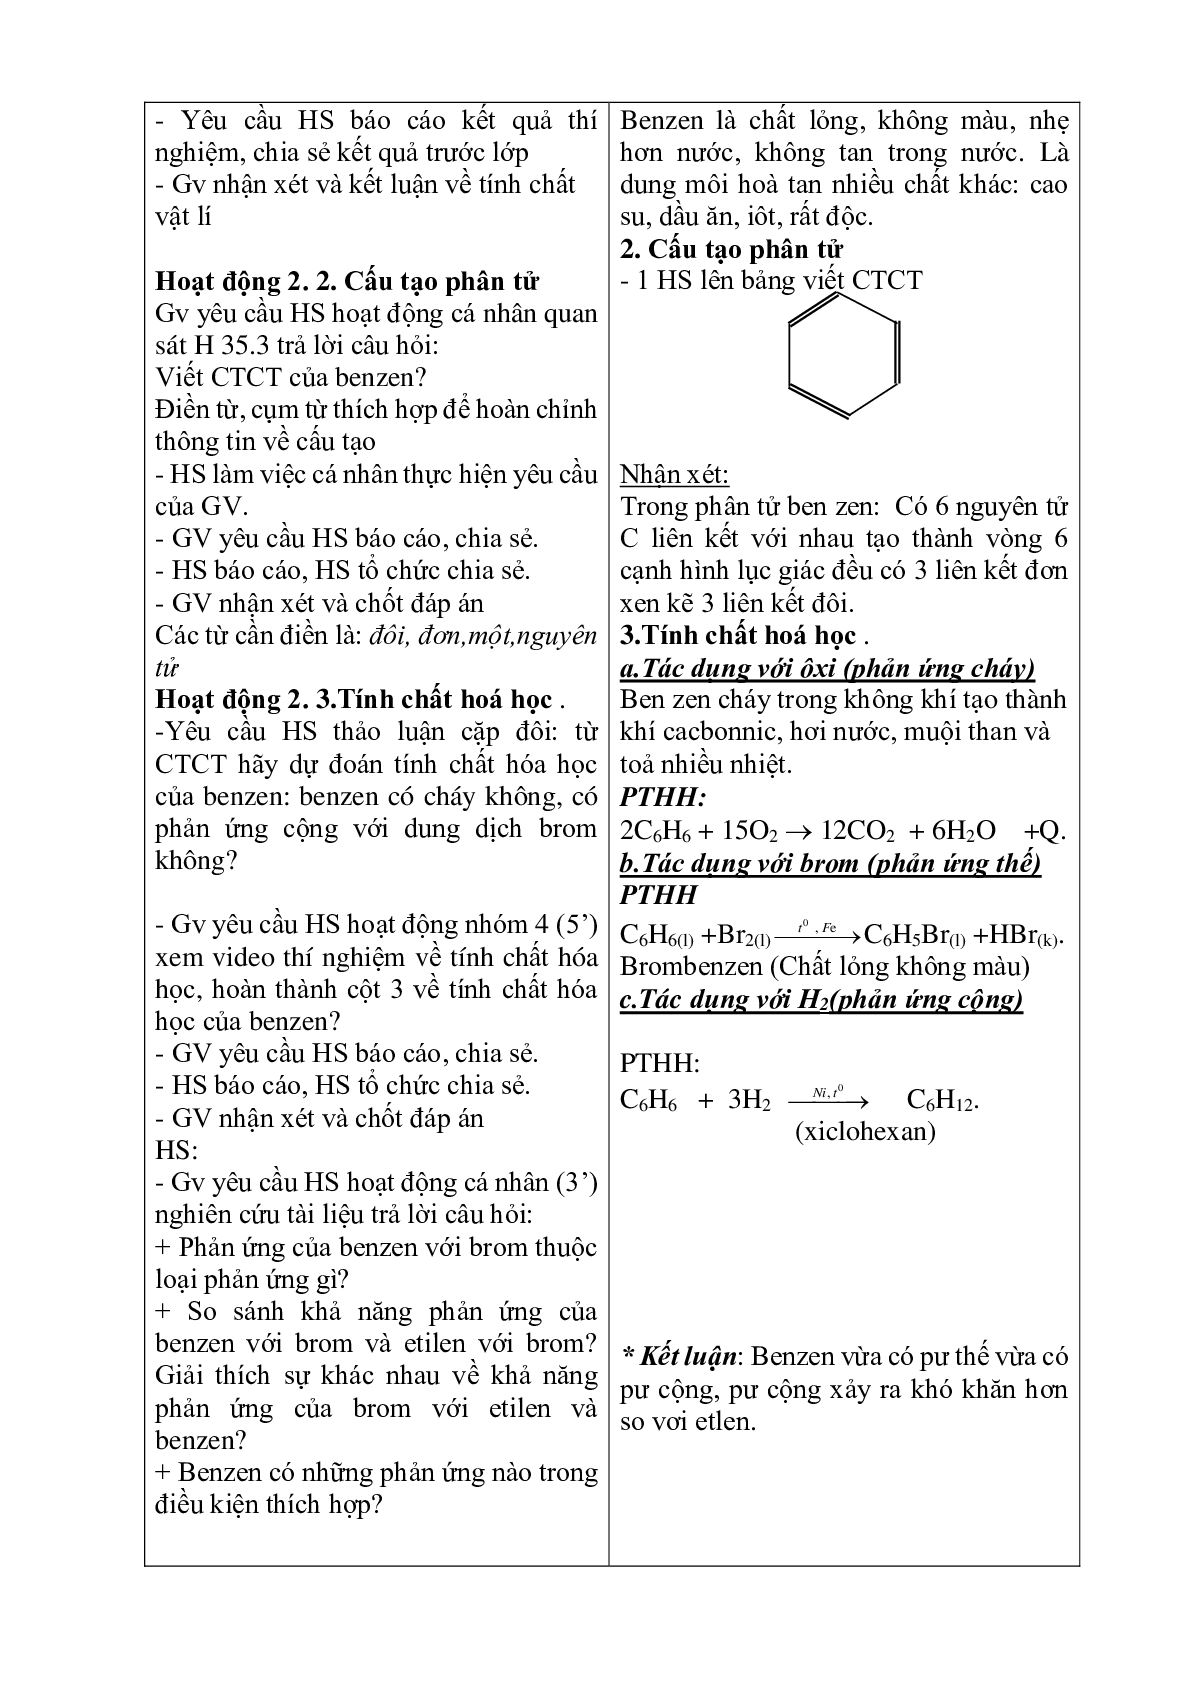 Giáo án Hóa học 9 bài 39 Benzen mới nhất (trang 2)